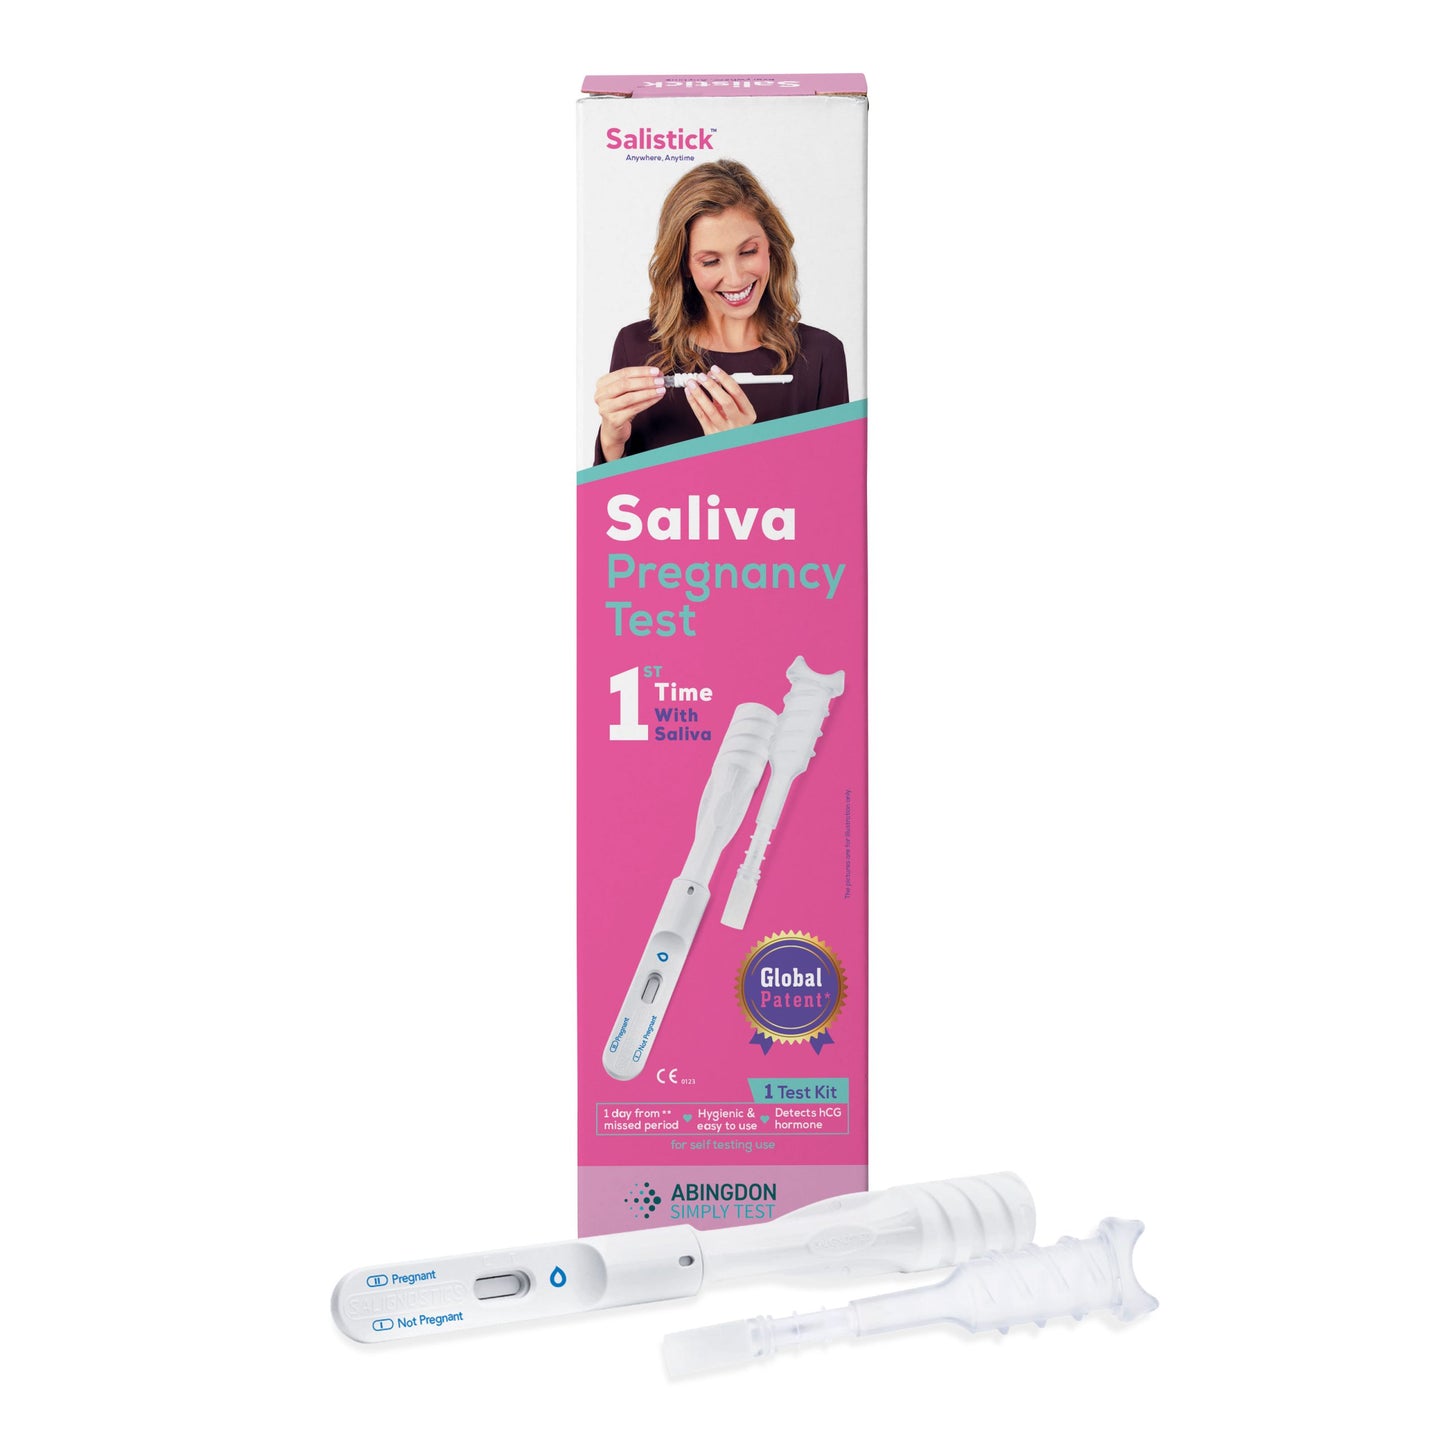 Salistick The Worlds First Saliva Pregnancy Test